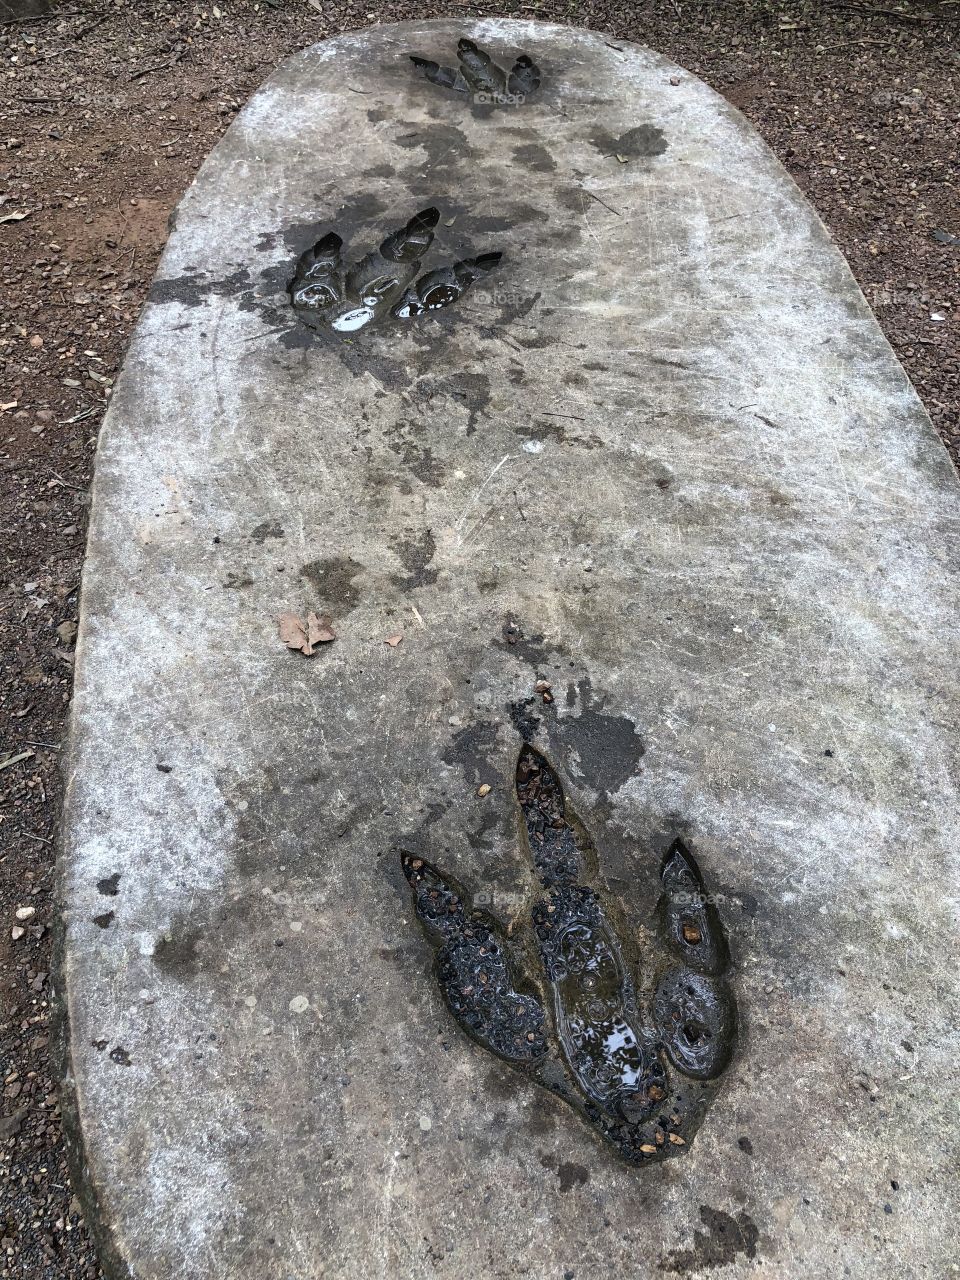 Dinosaur footprint in rock